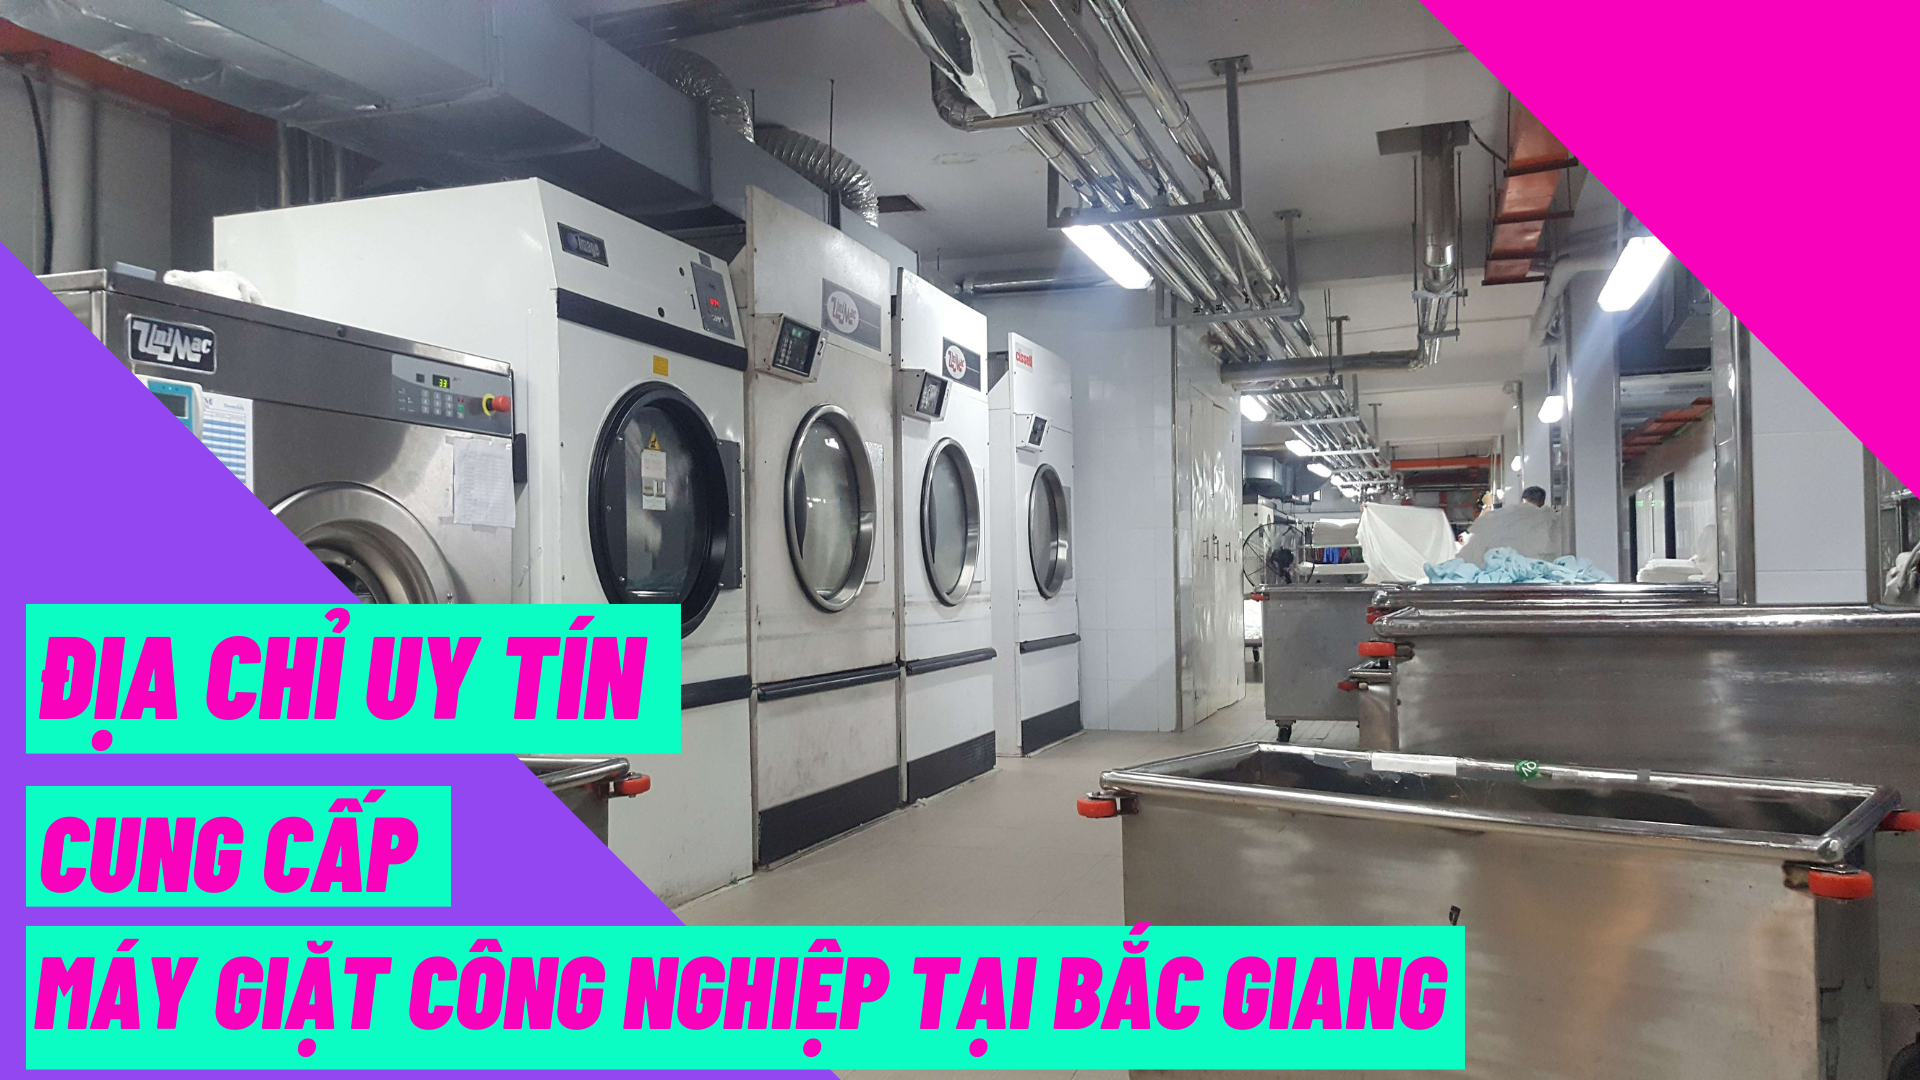 Địa chỉ uy tín cung cấp máy giặt công nghiệp tại Bắc Giang